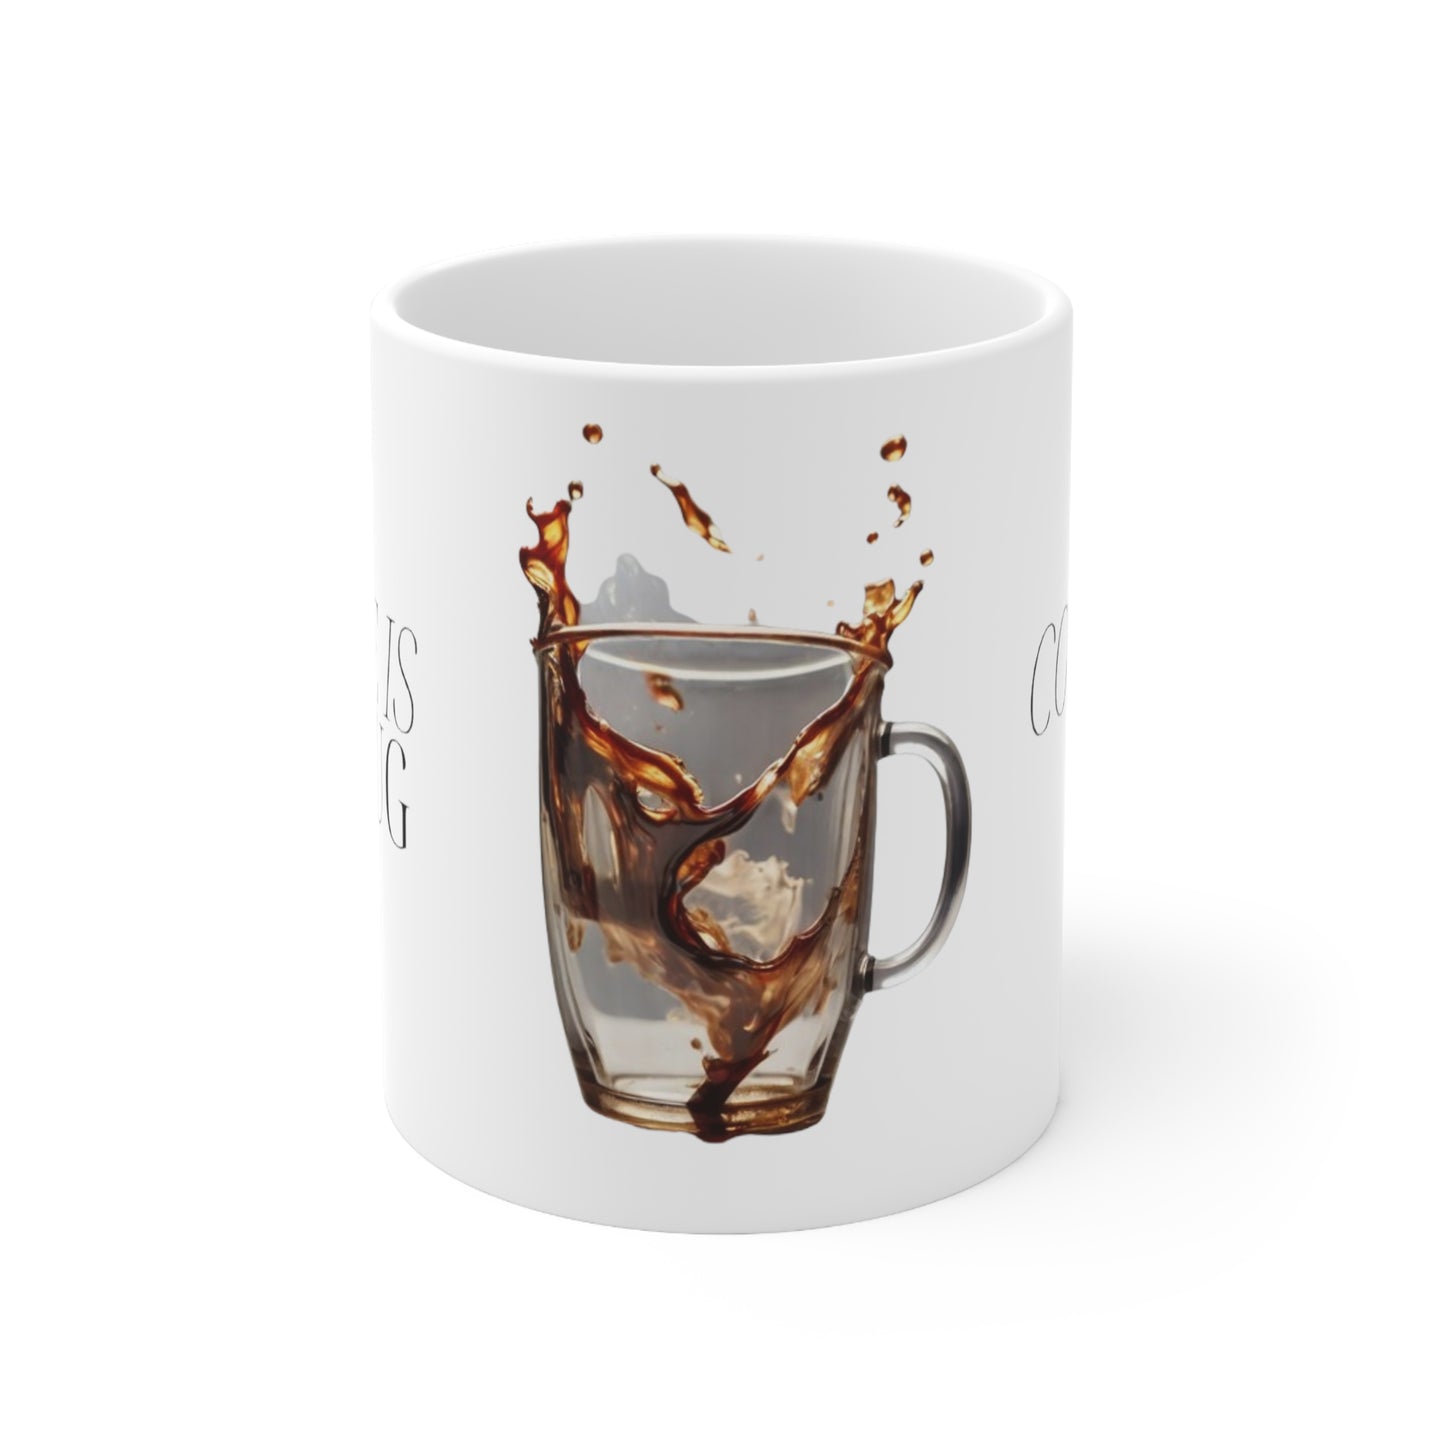 Coffee Is A Hug In A Mug - Ceramic Coffee Mug 11oz